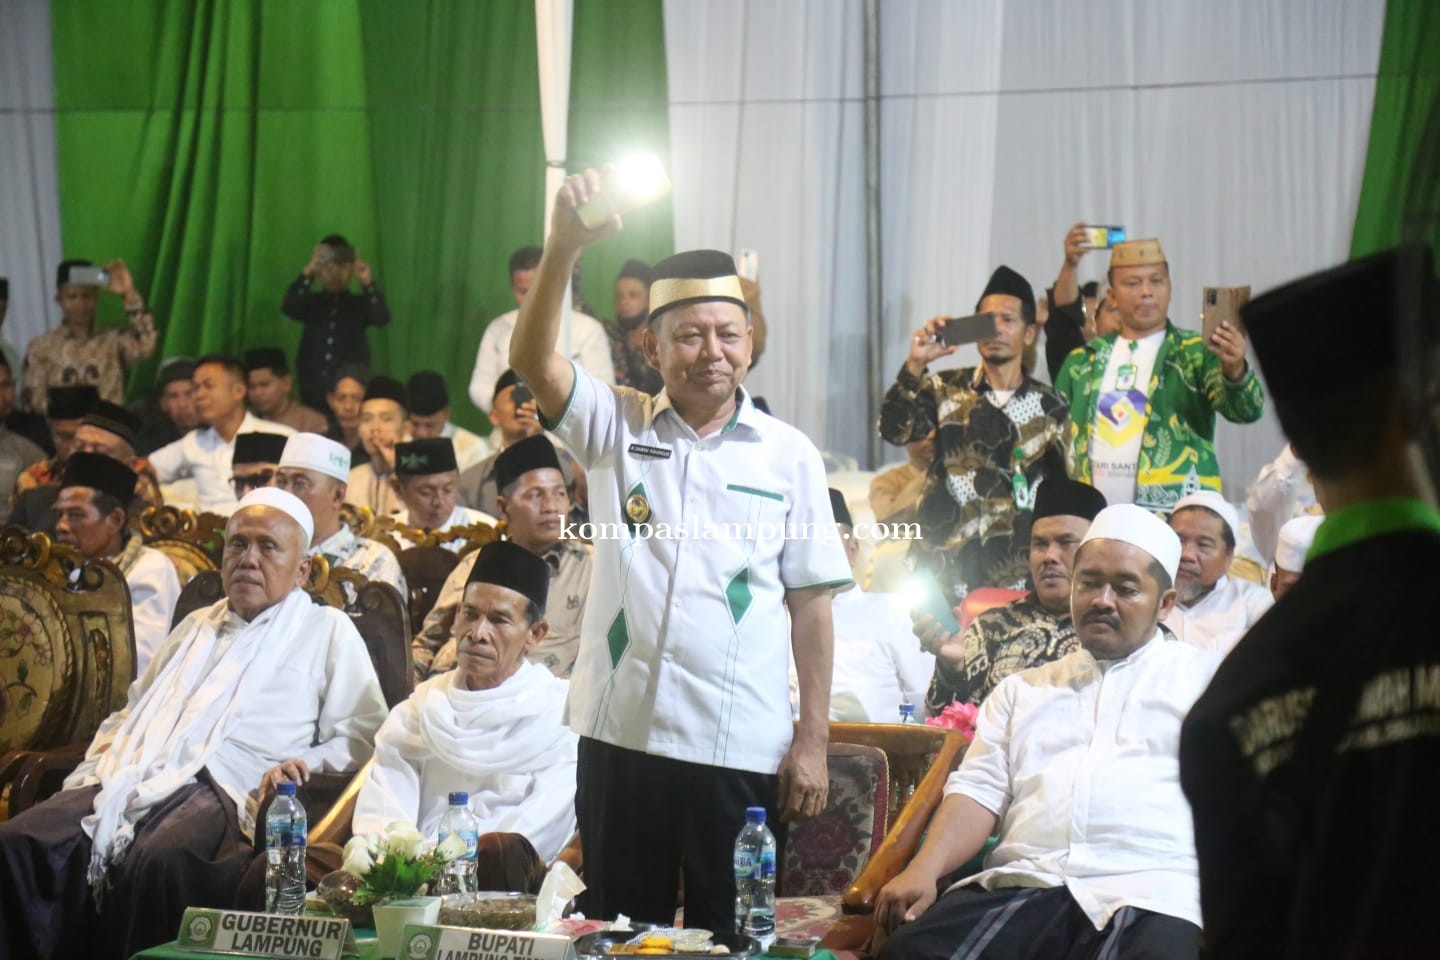 Bupati Lampung Timur Hadiri Acara Syukuran Atas Diraihnya Juara Umum Pocil Tingkat Propinsi Lampung